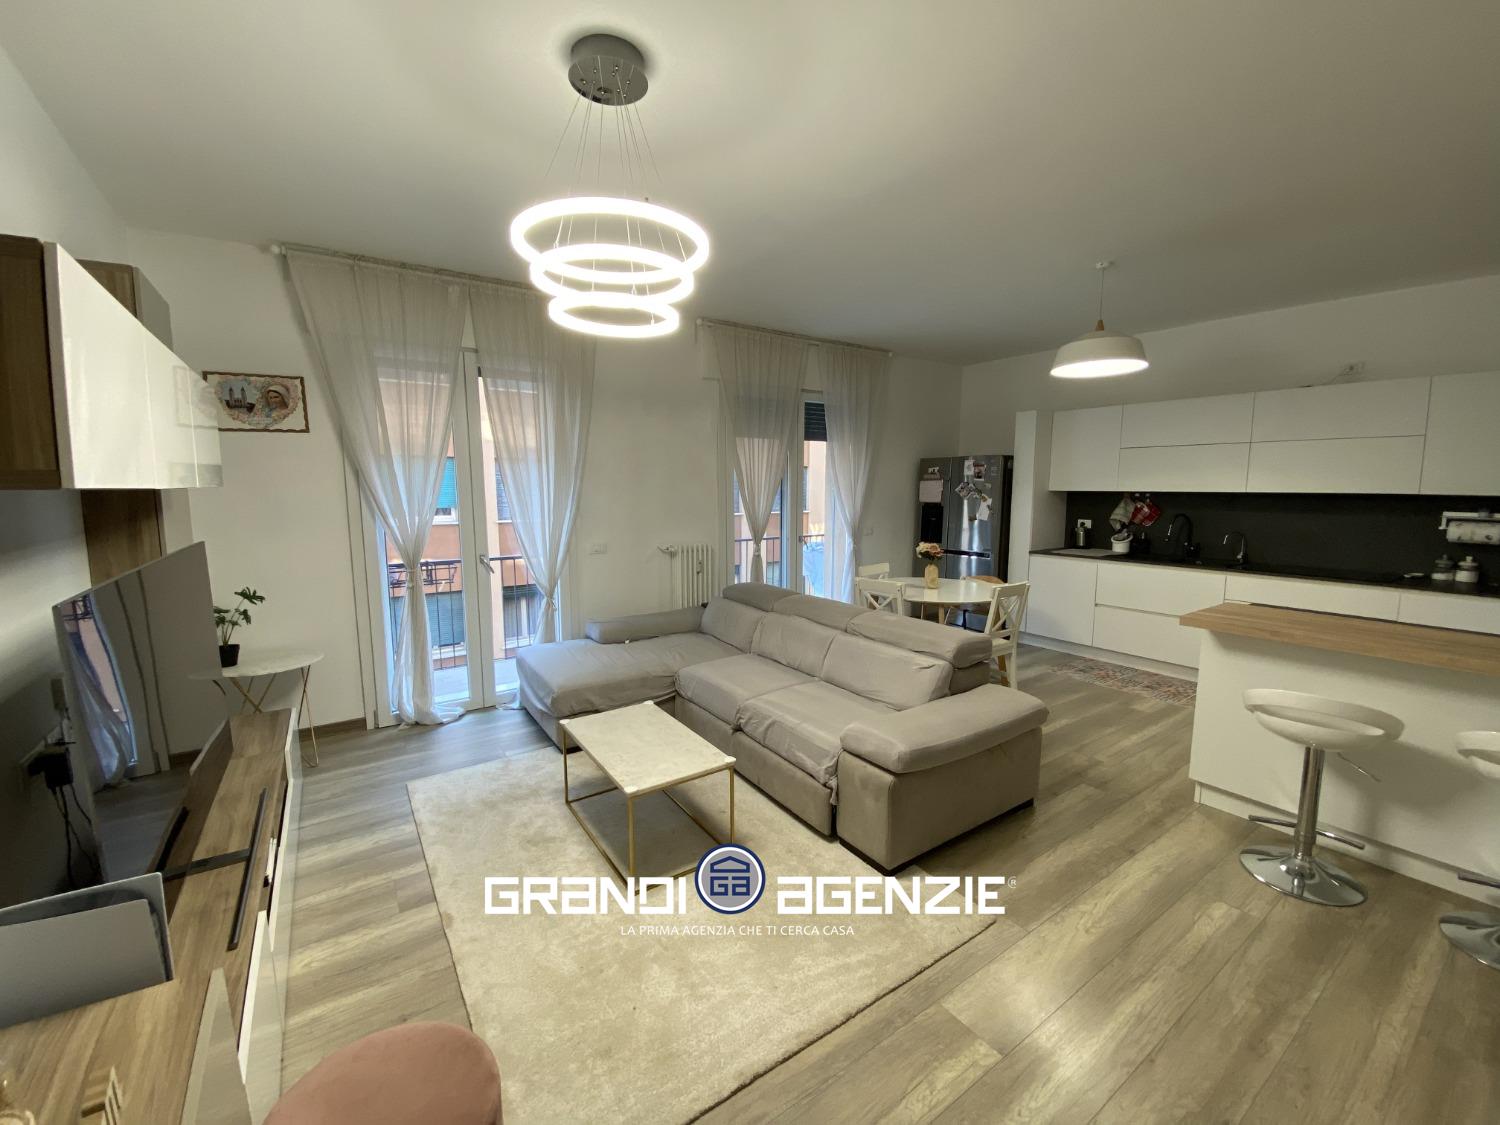 Appartamento in vendita a Treviso, 4 locali, prezzo € 220.000 | PortaleAgenzieImmobiliari.it